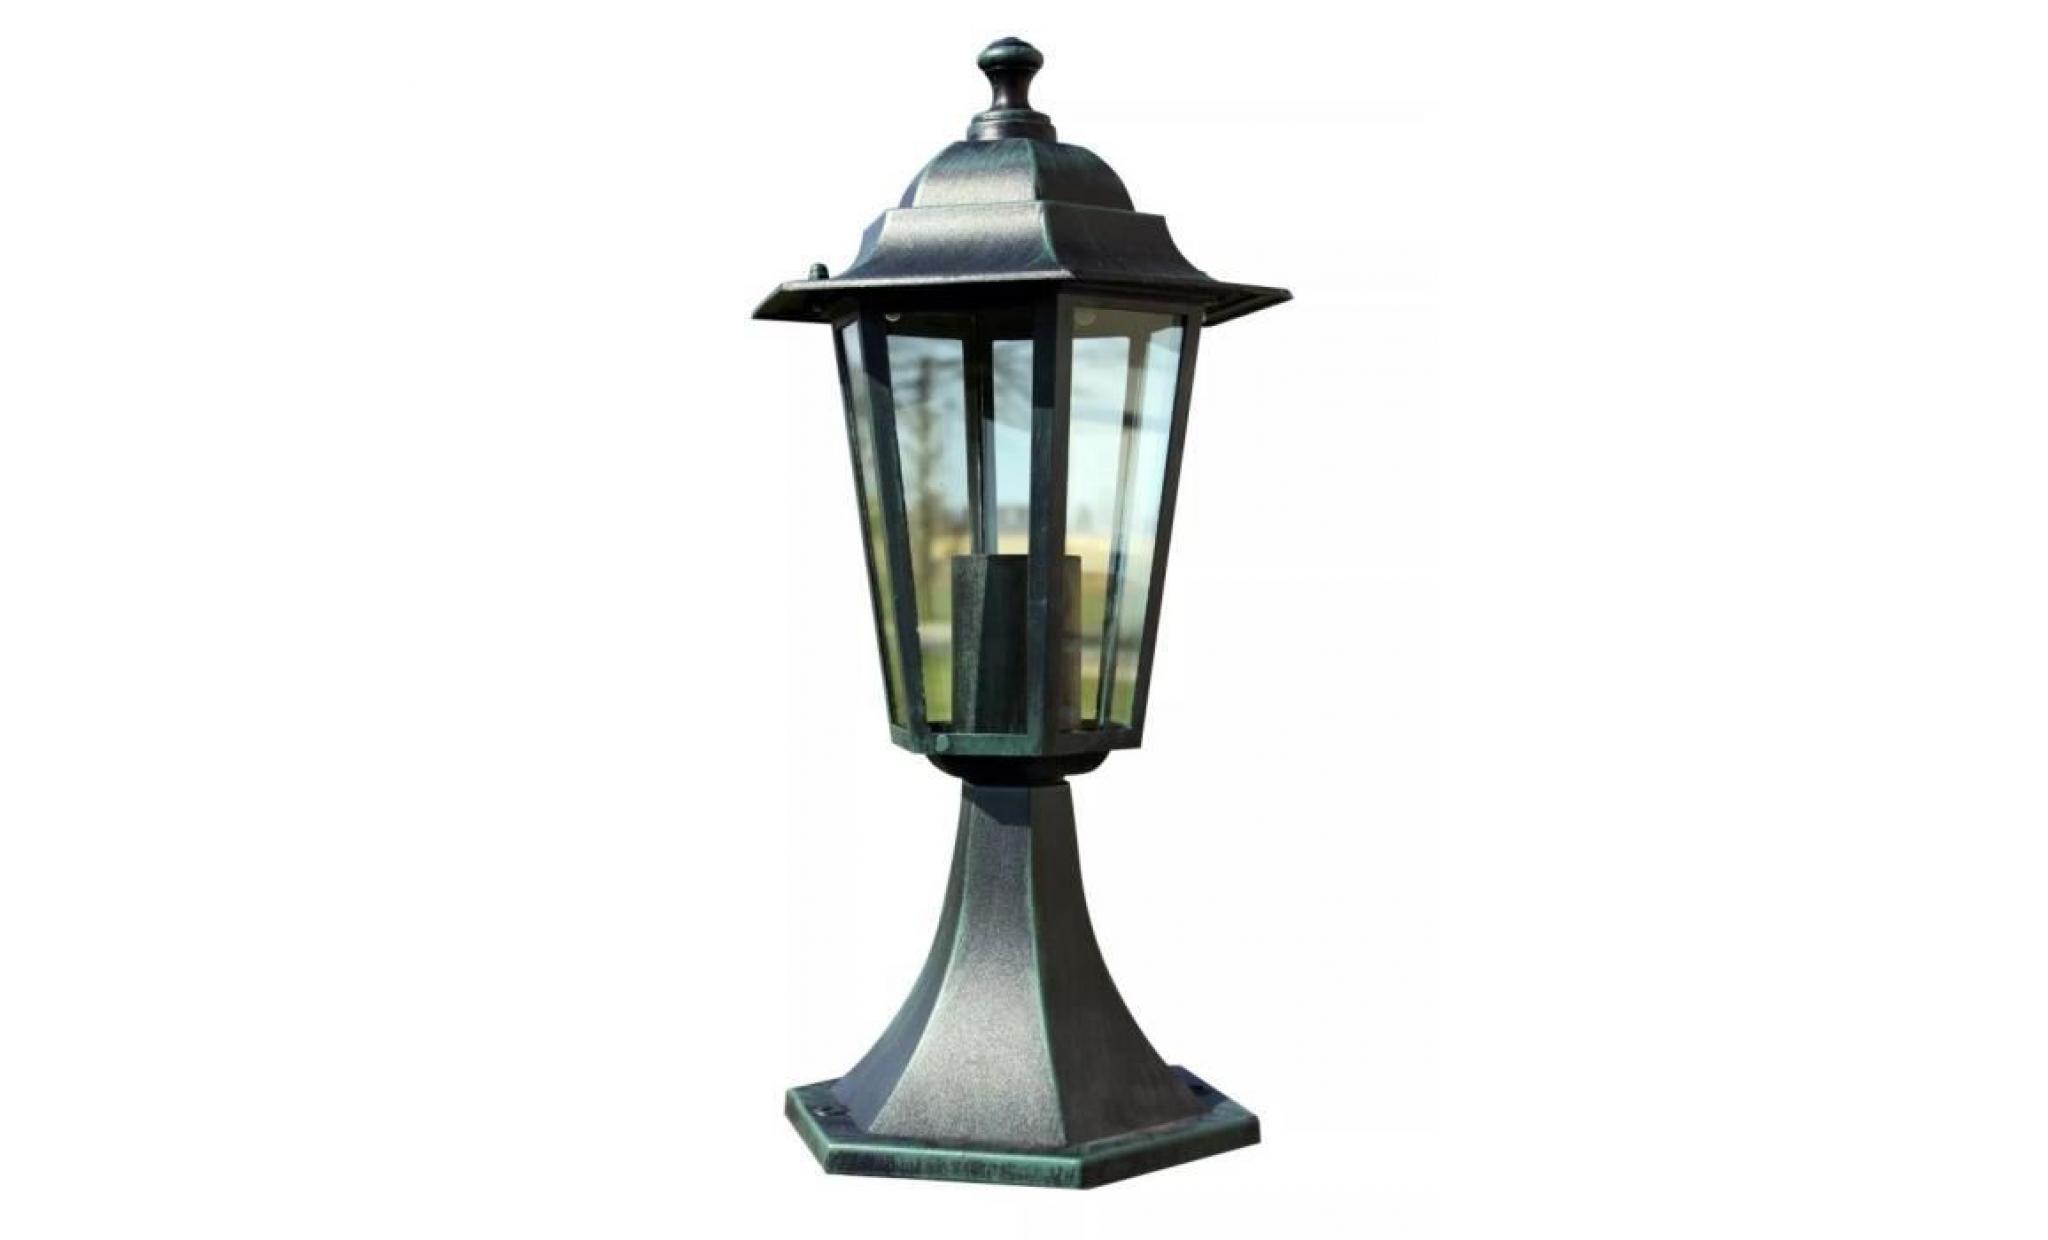 r138 ce lampadaire de 41 cm a 1 lampe en verre transparent. il est adapte a l'eclairage du jardin ou d'une allee de jard